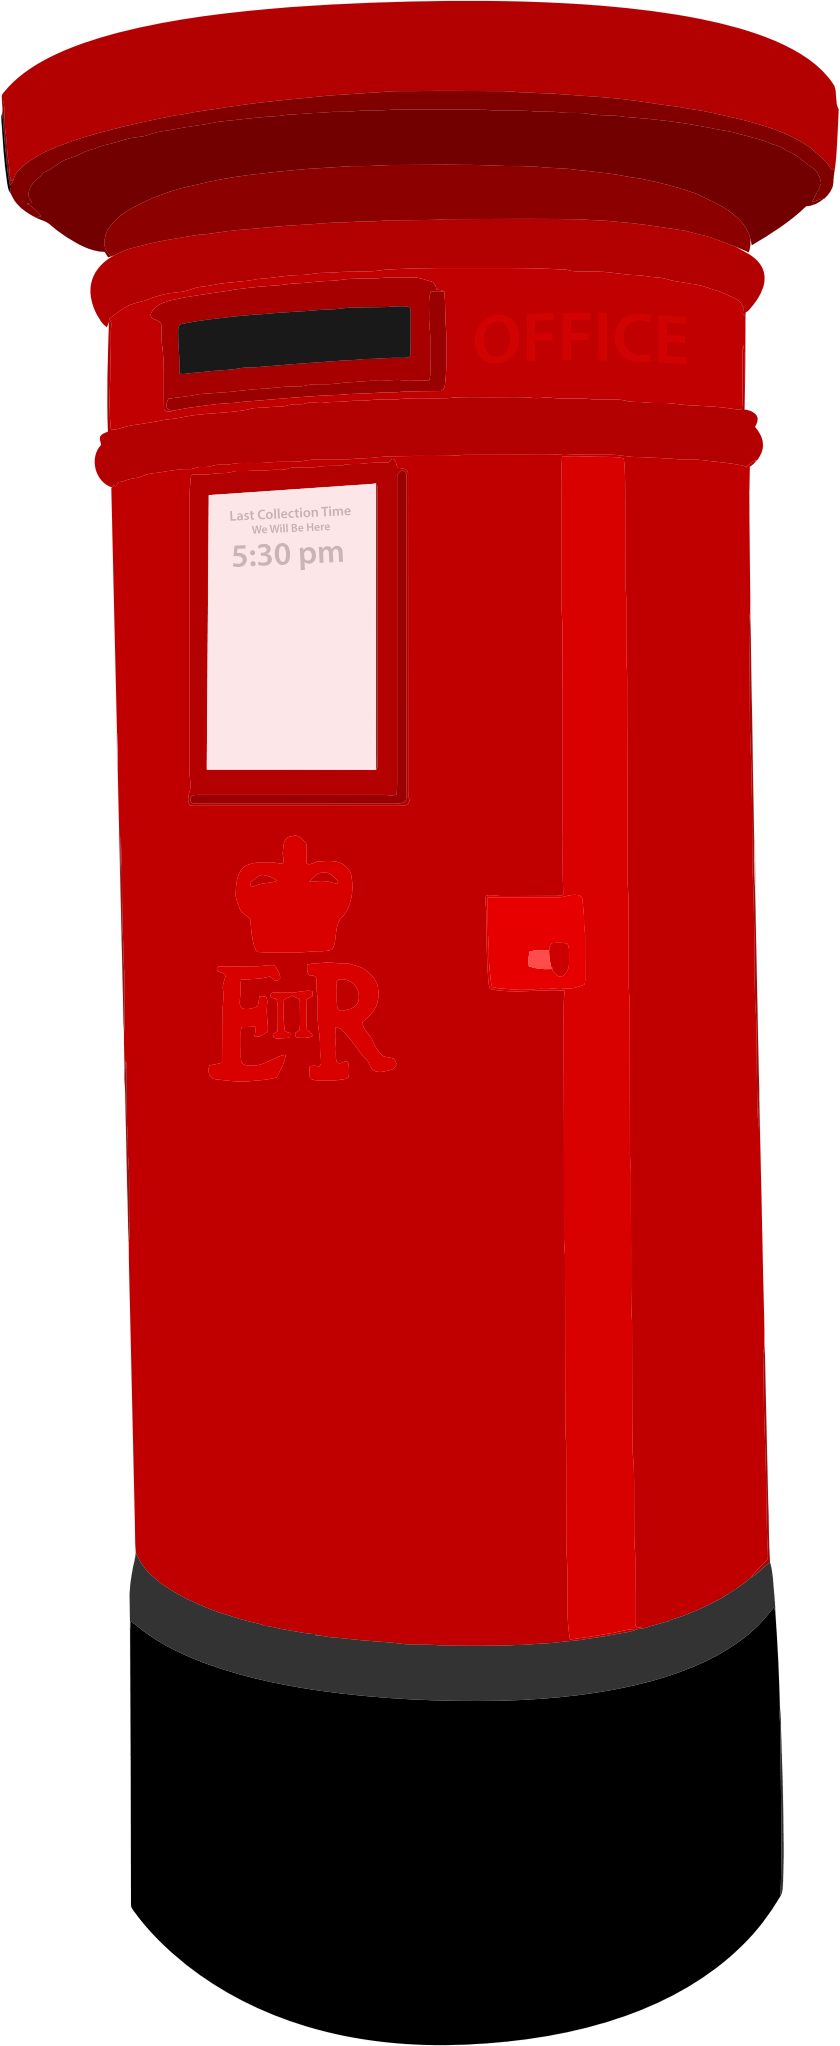 mailbox clipart buzon